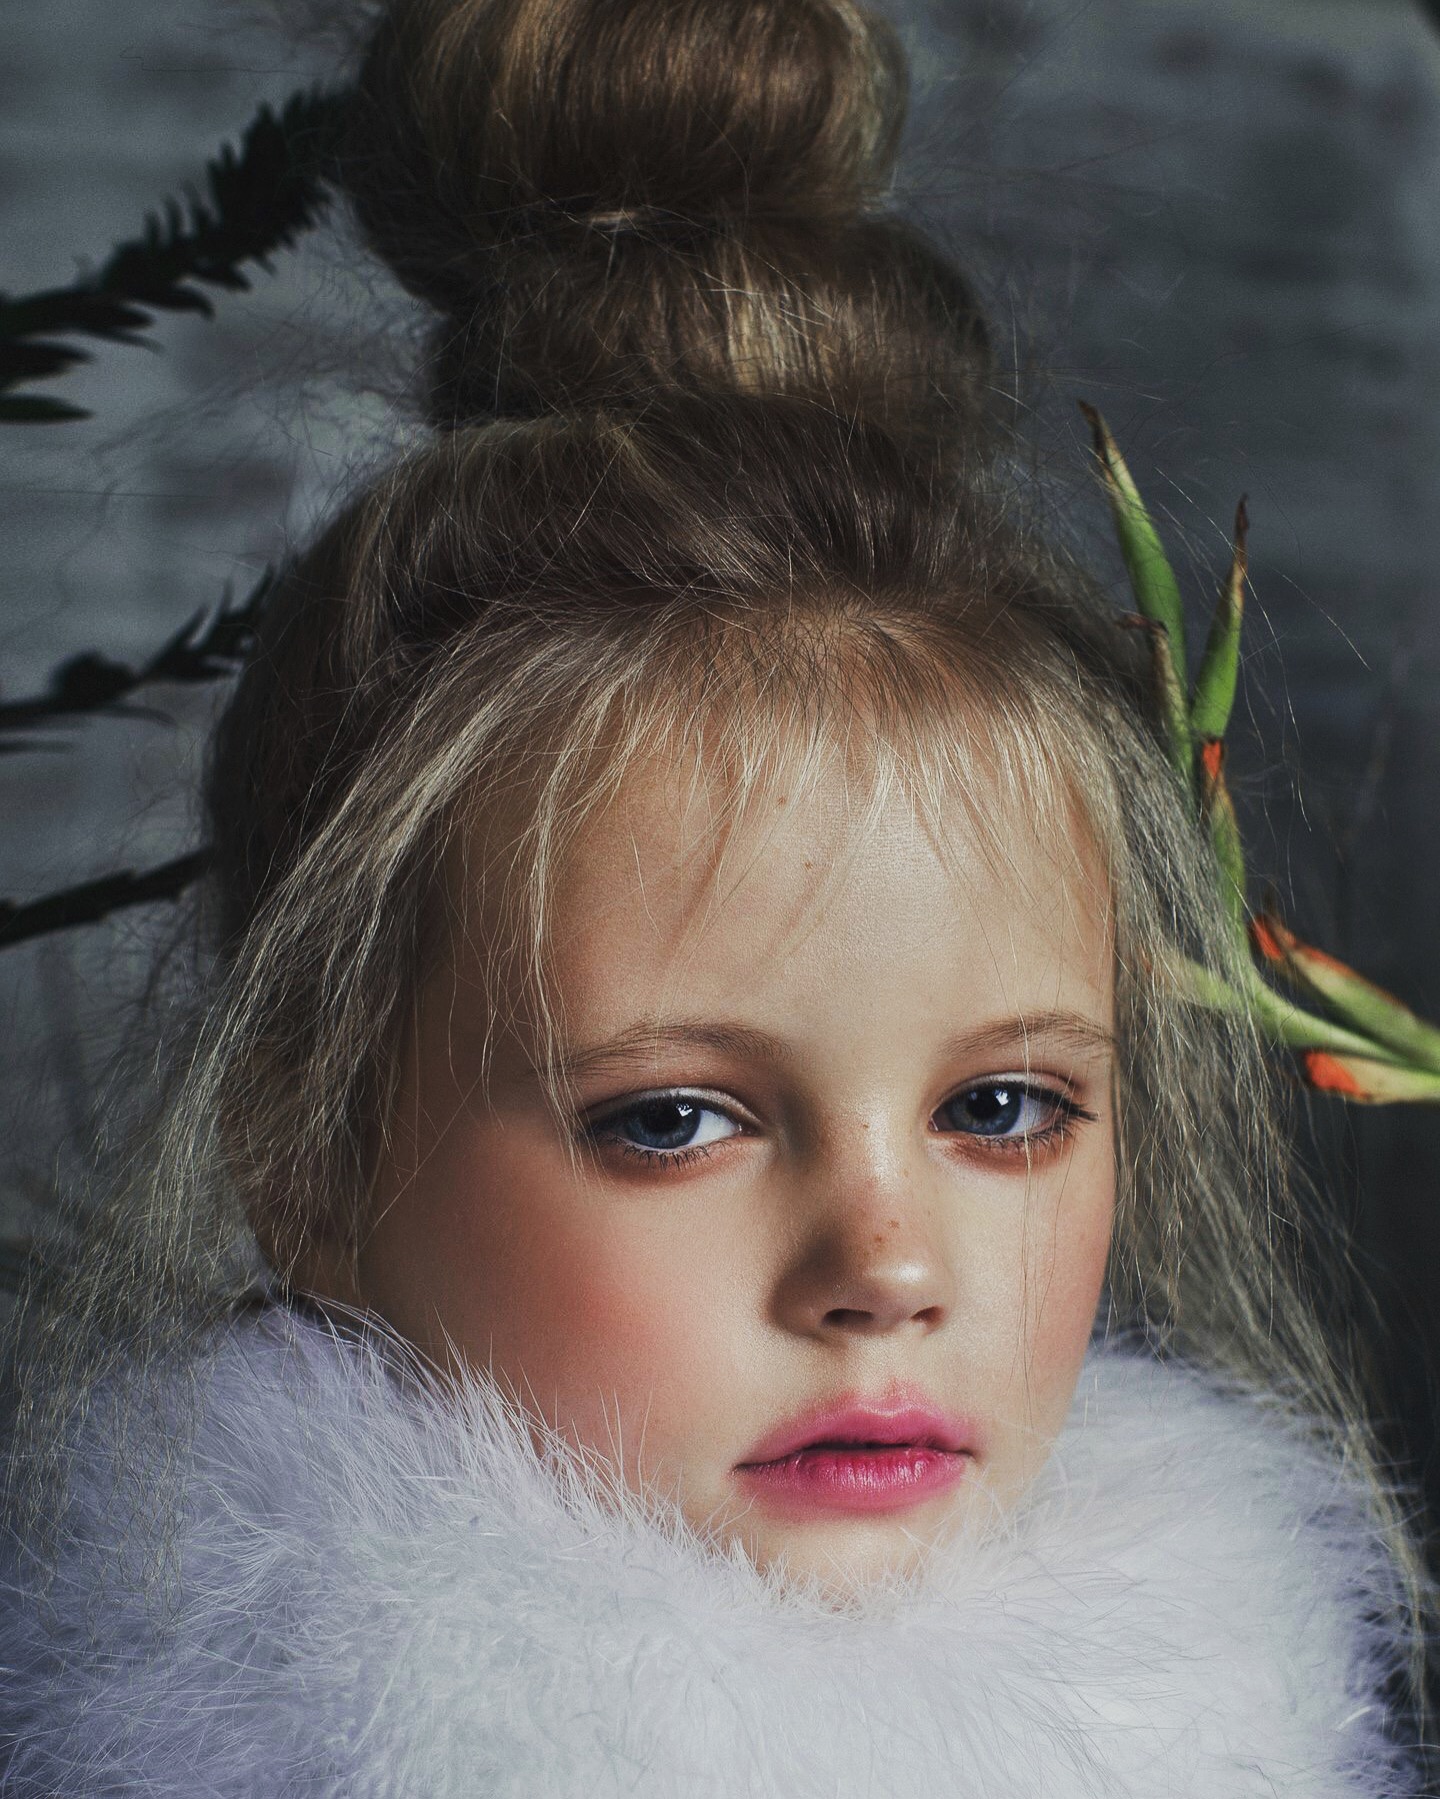 Софья Стрижова - аккредитованная модель для участия в подиумных показах на Междунродной Детской Неделе моды